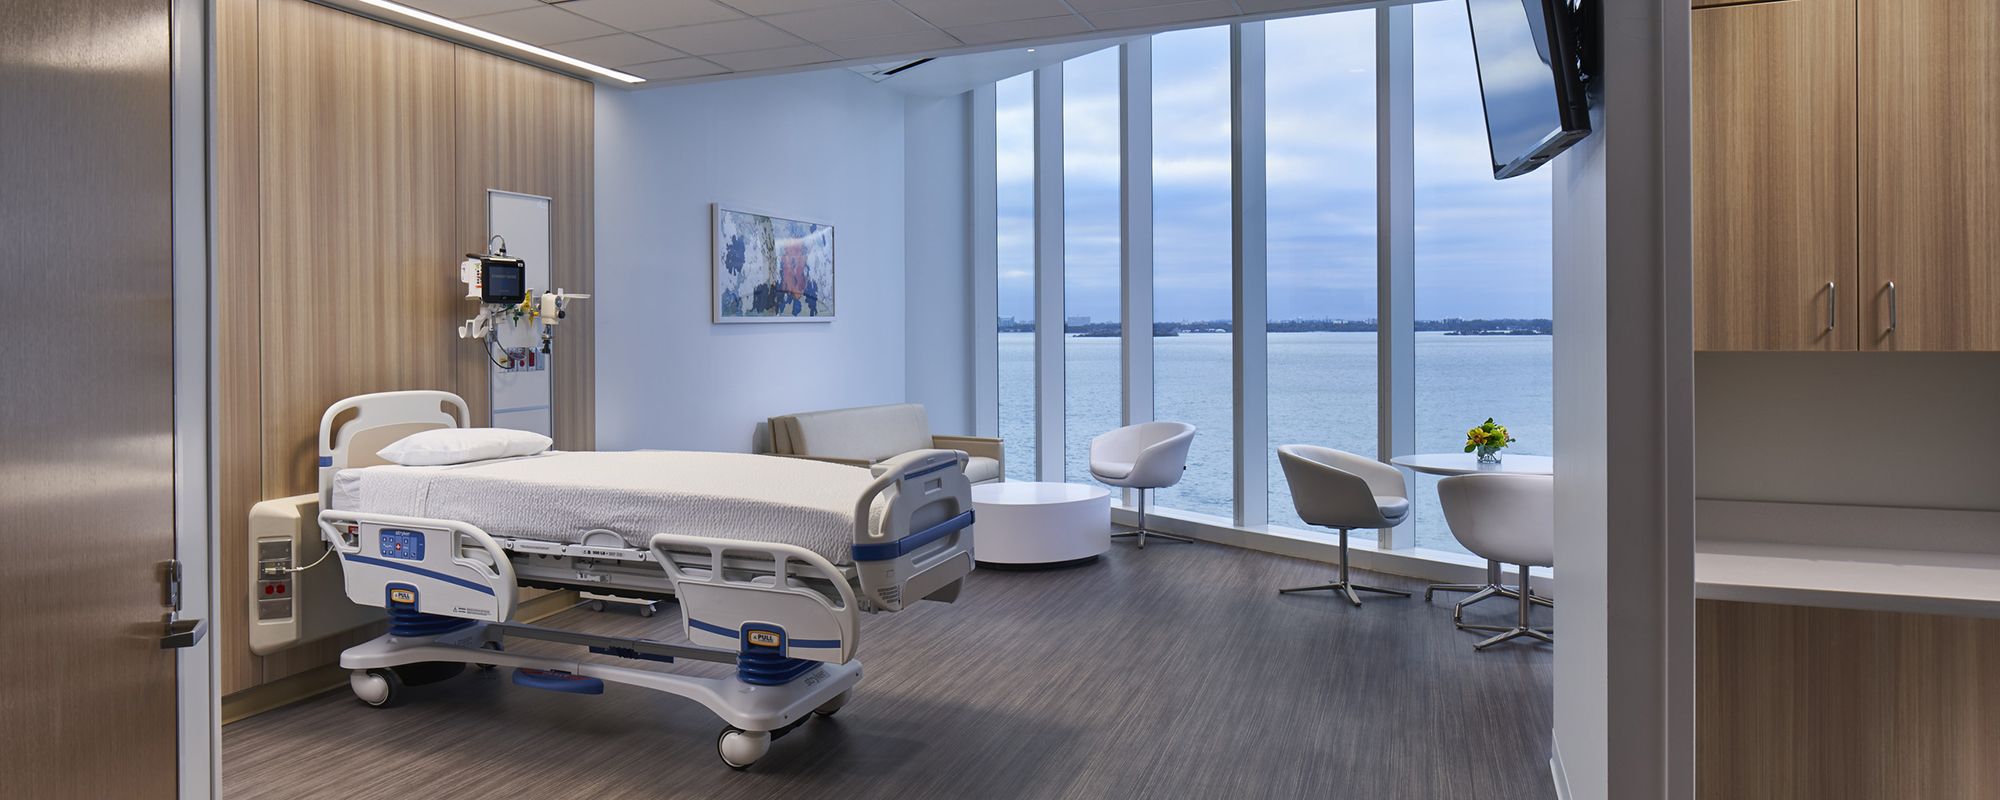 Waterfront patient room